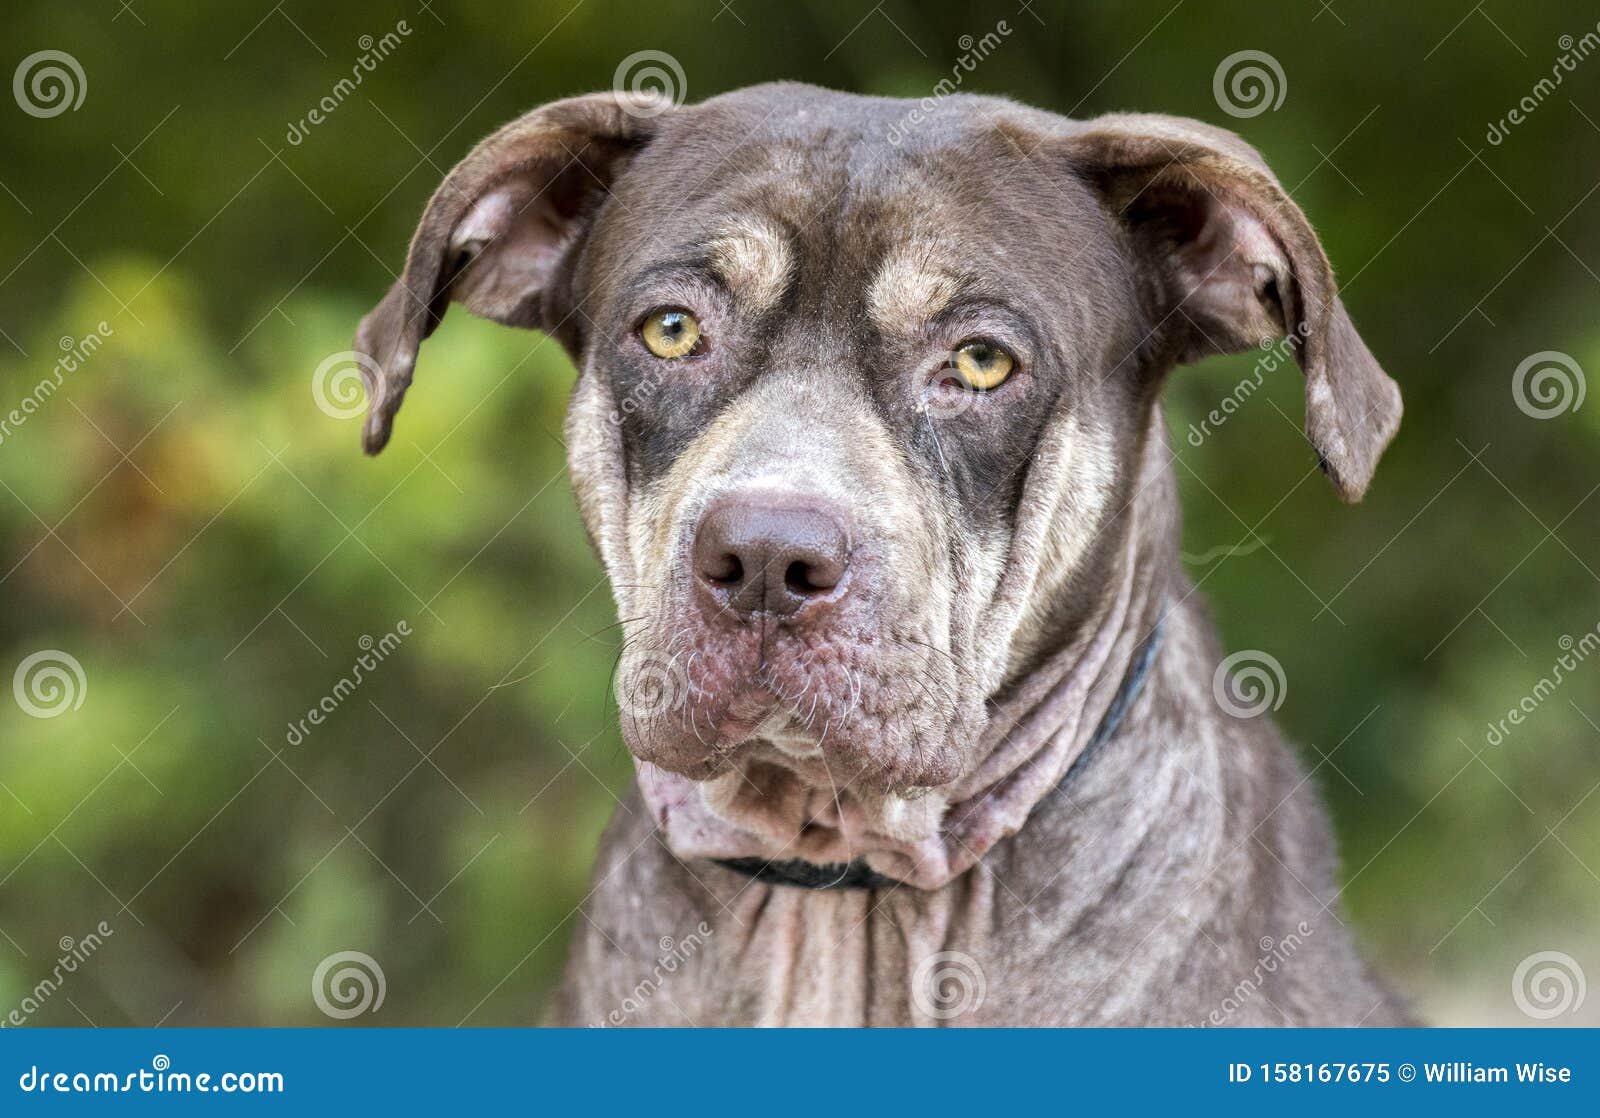 Sad Shar Pei Pitbull Mix Dog With Mange Stock Image Image Of Society Cruelty 158167675